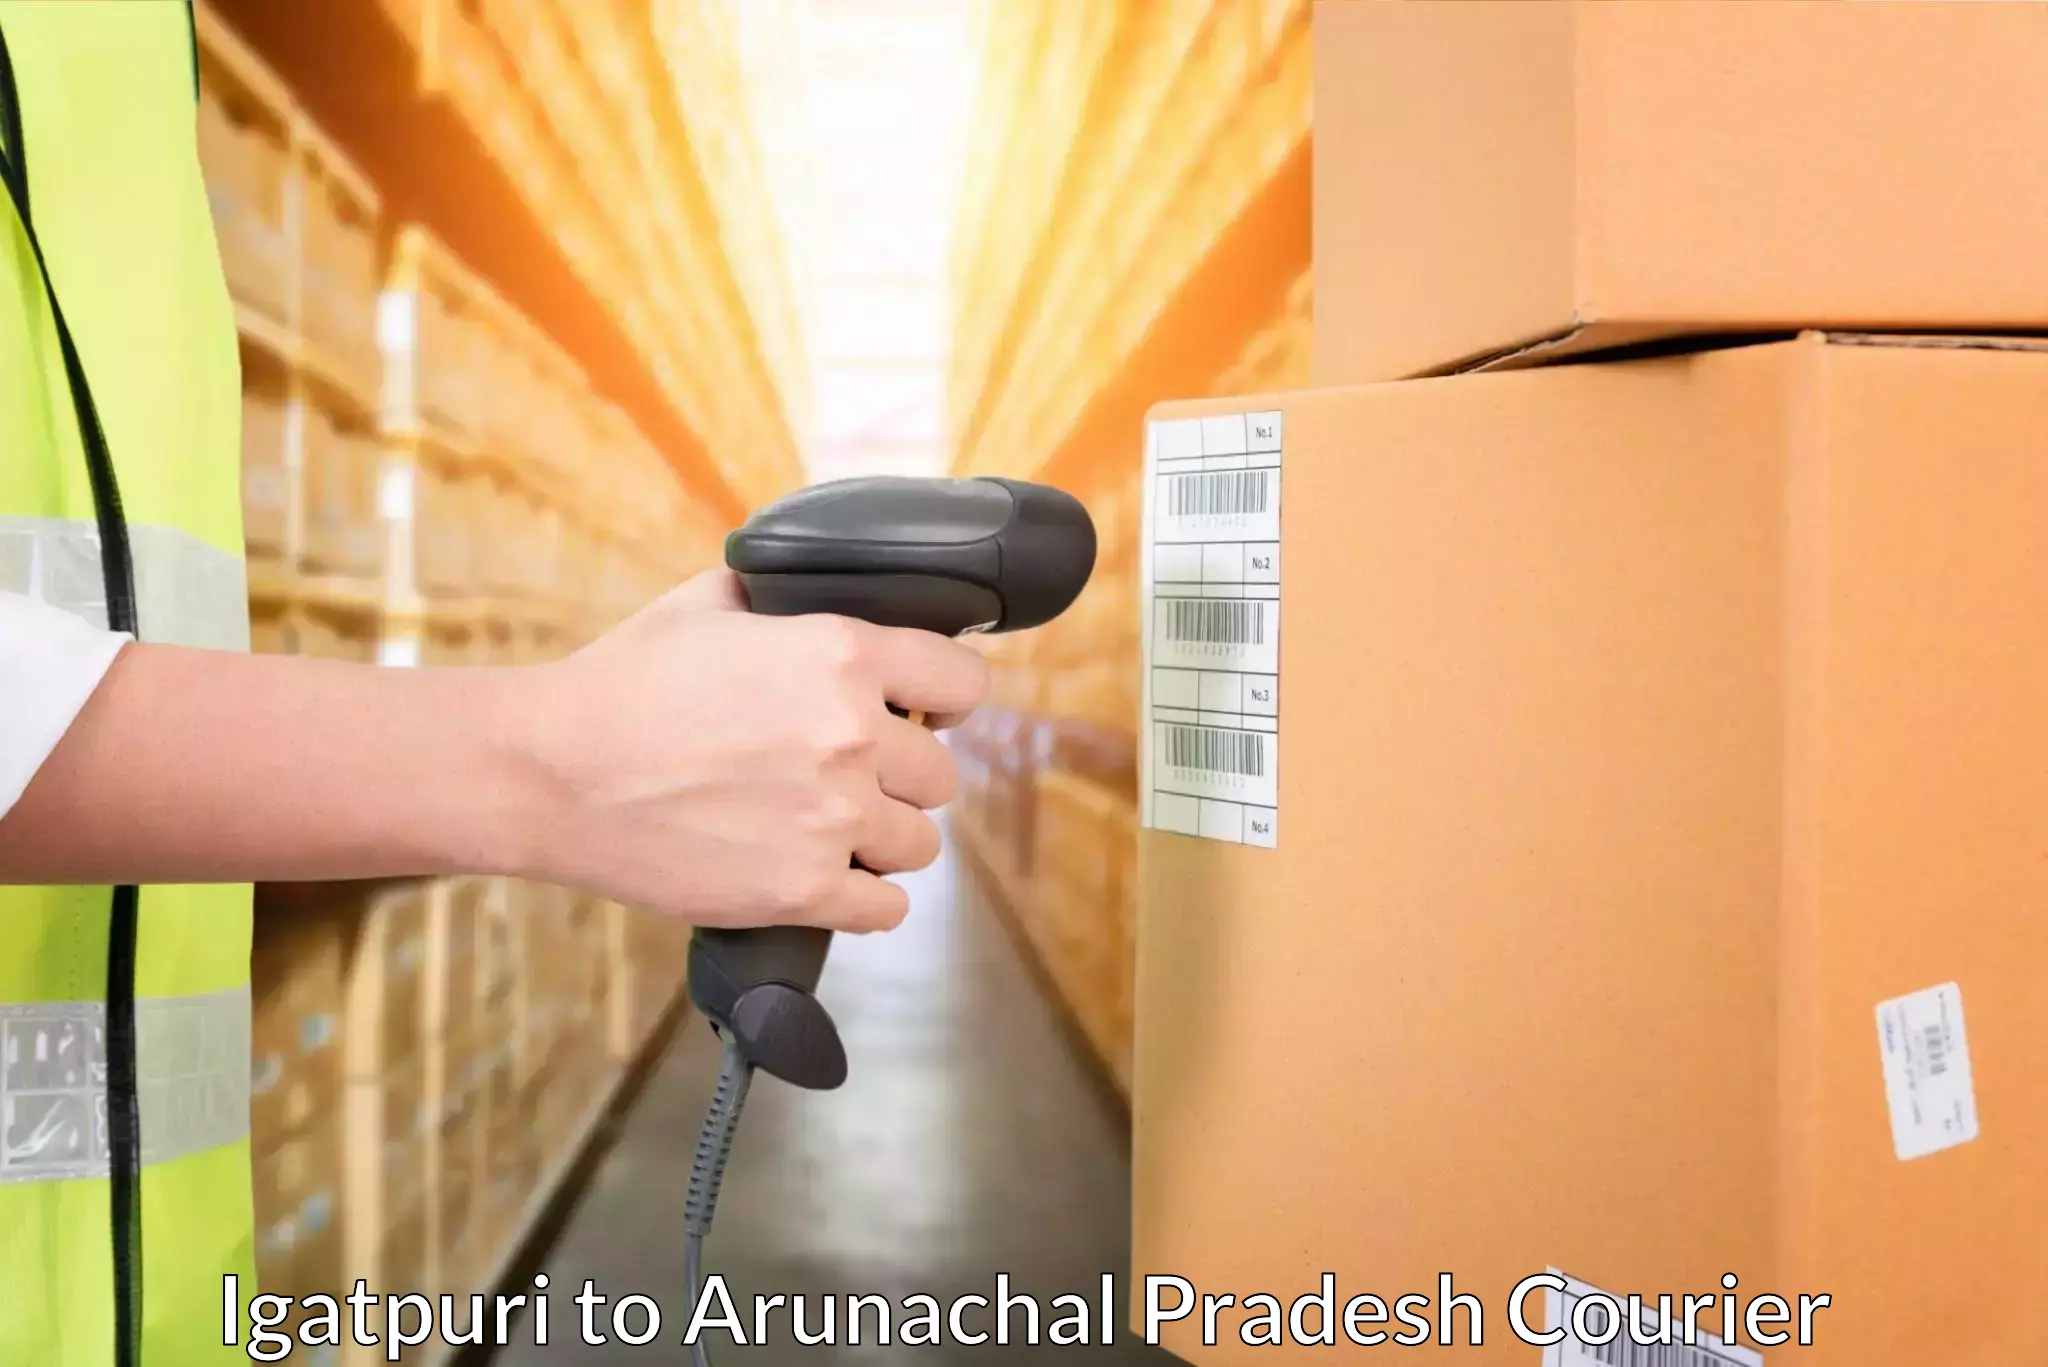 Return courier service in Igatpuri to Arunachal Pradesh